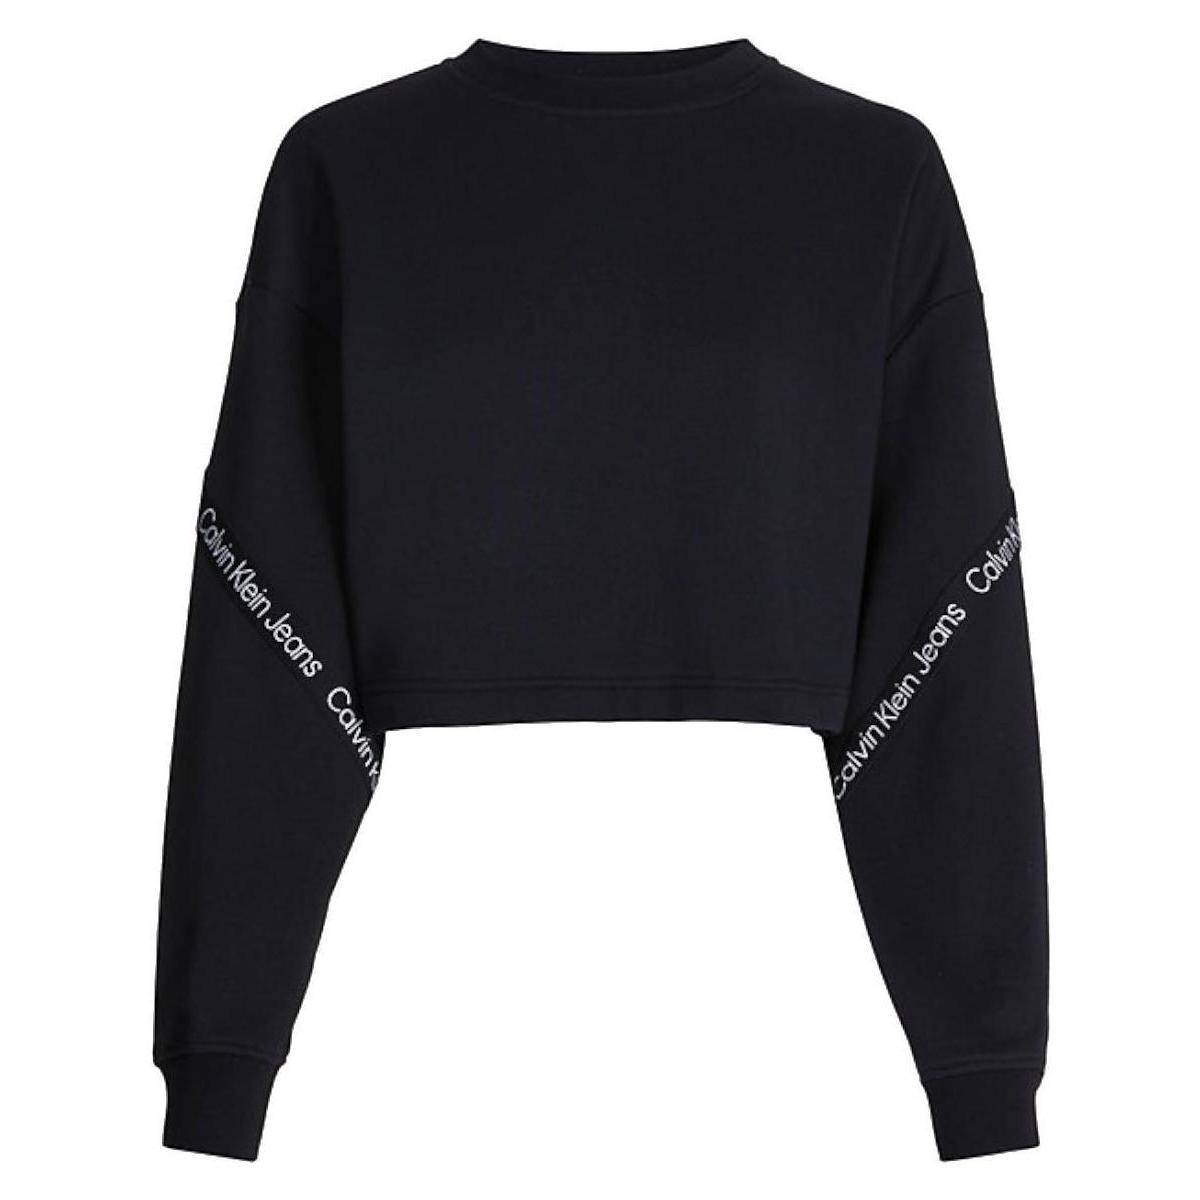 textil Dame Sweatshirts Calvin Klein Jeans  Sort